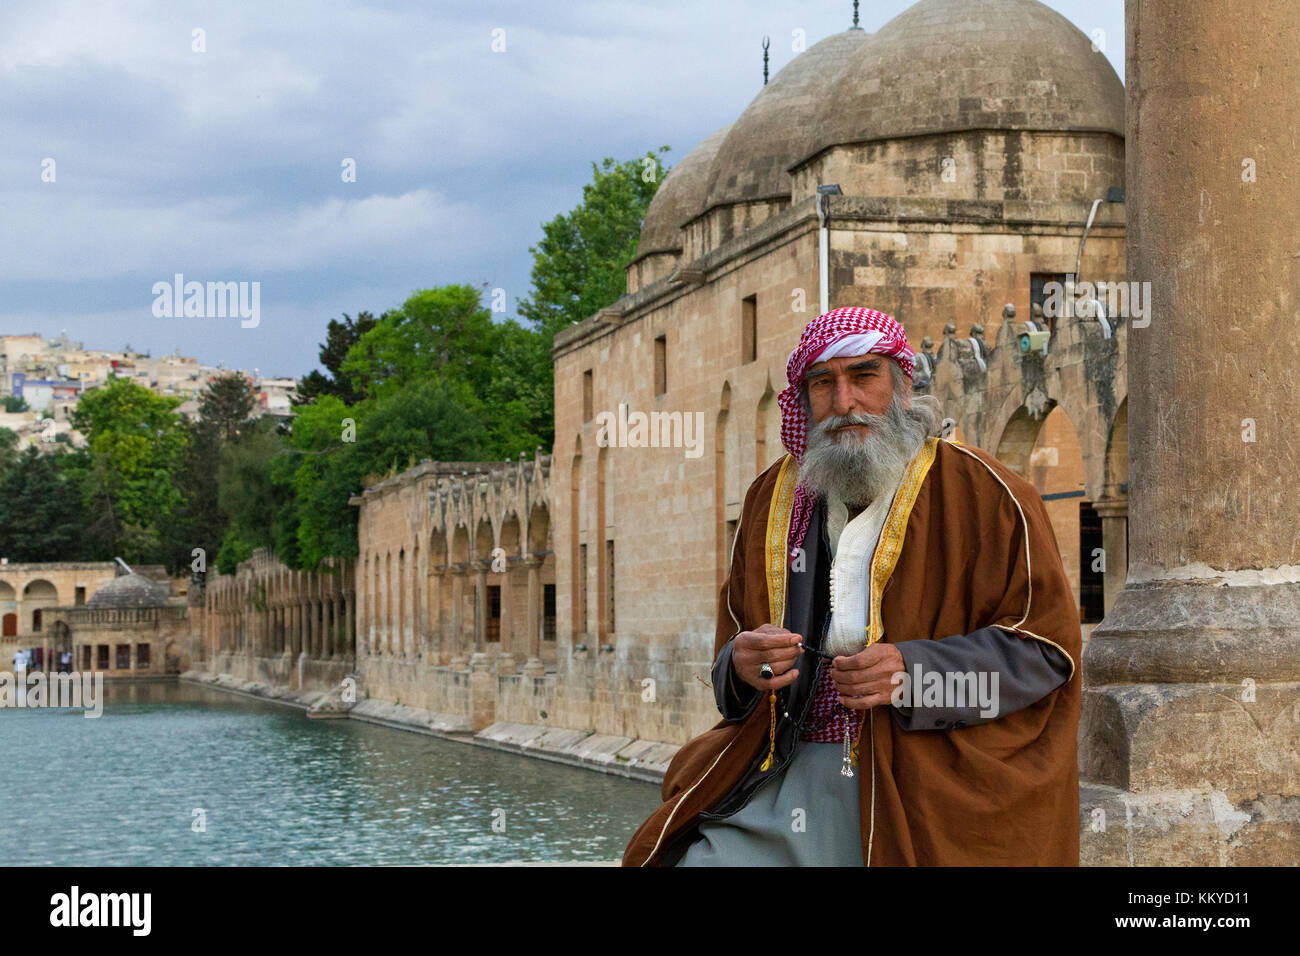 Uomo locale in costume etnico, nel parco conosciuto come 'Abrahams Pond' o 'Balikligol' a Sanliurfa, Turchia. Foto Stock